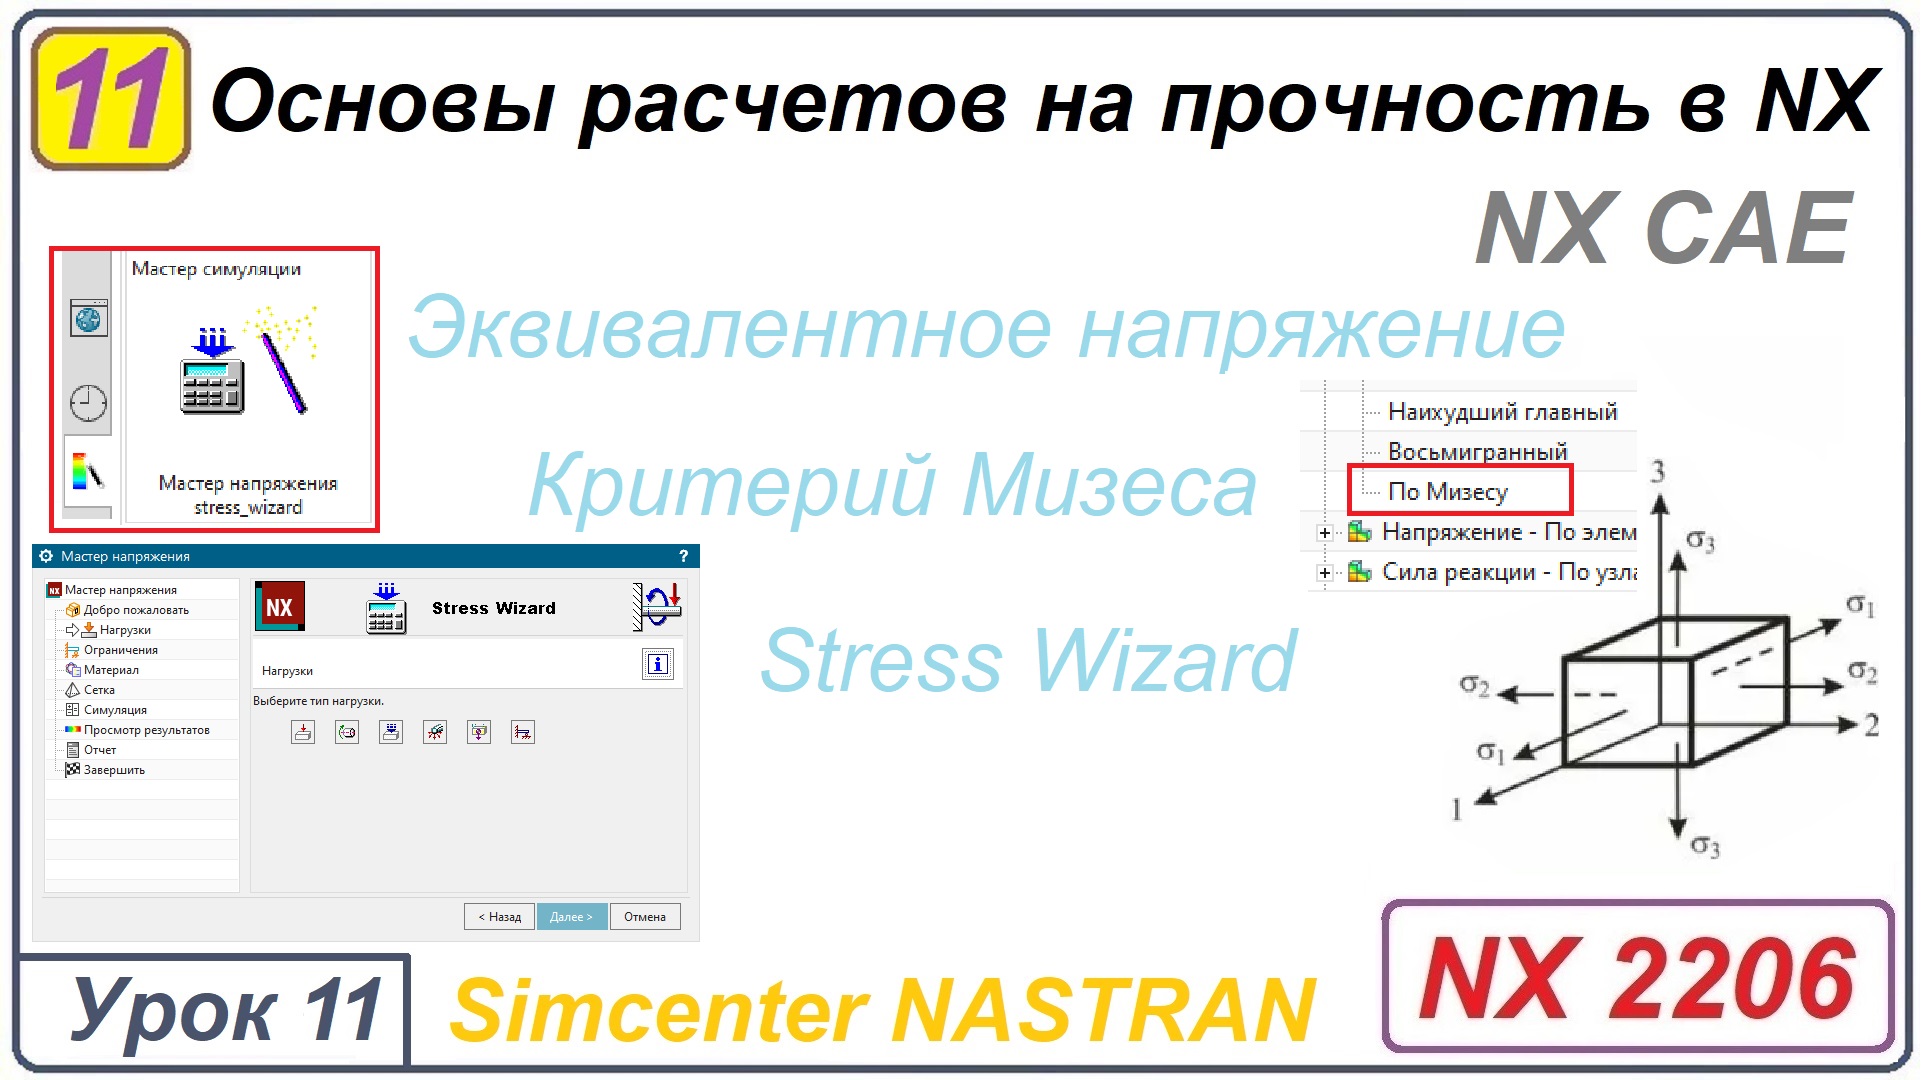 NX CAE. Основы расчетов на прочность в NX. Урок 11. Эквивалентное напряжение. Мизес. Stress Wizard.